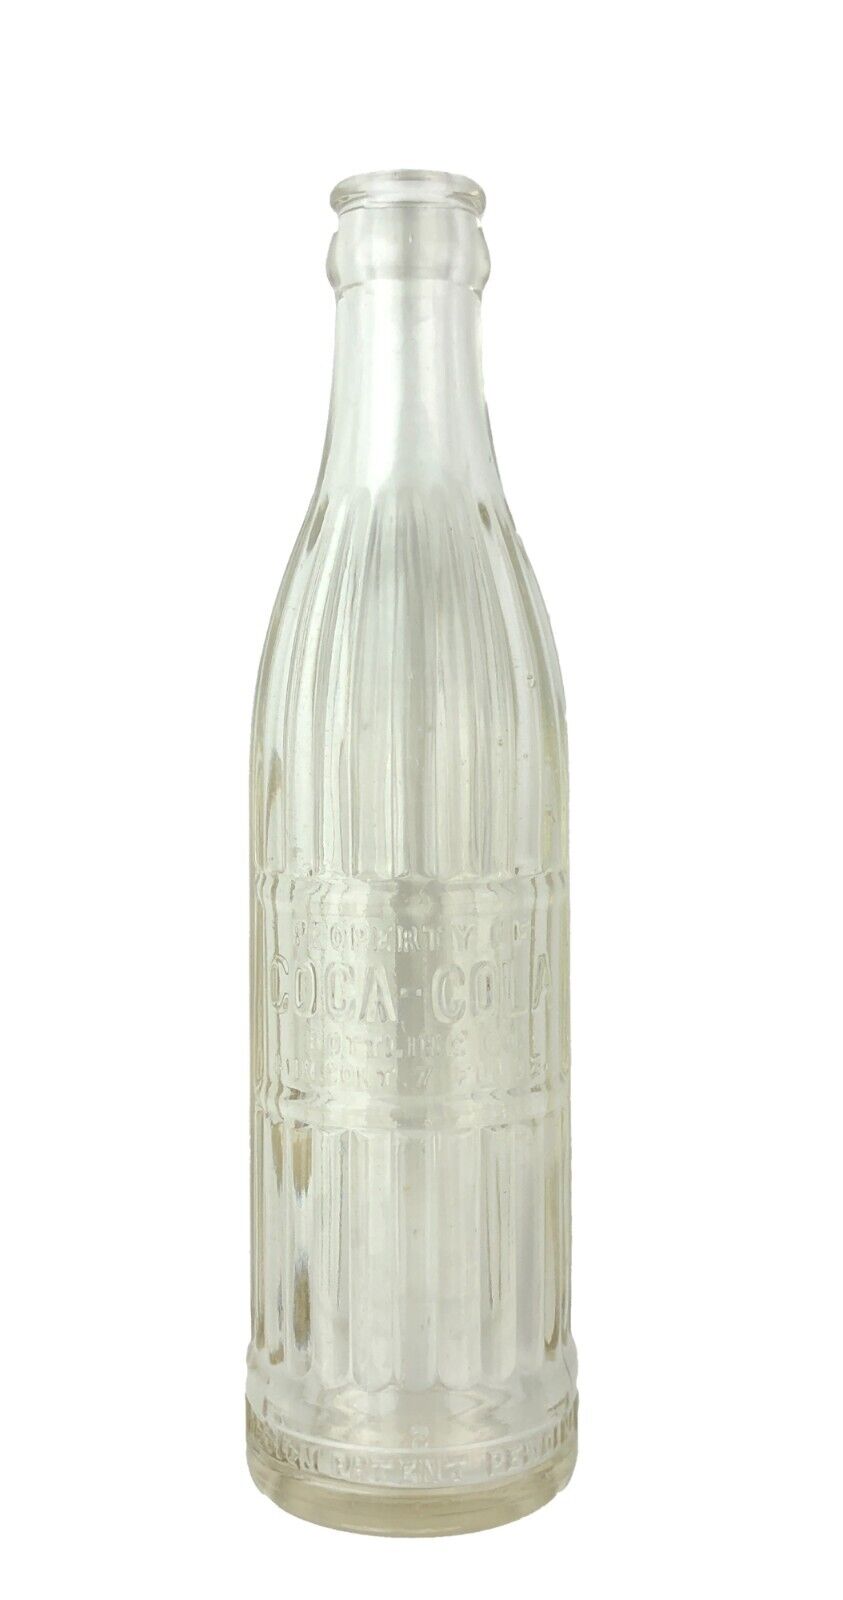 Pre 1916 Coca Cola Bottle - VERY RARE - World War 1 Era - WWI  GREAT Condition